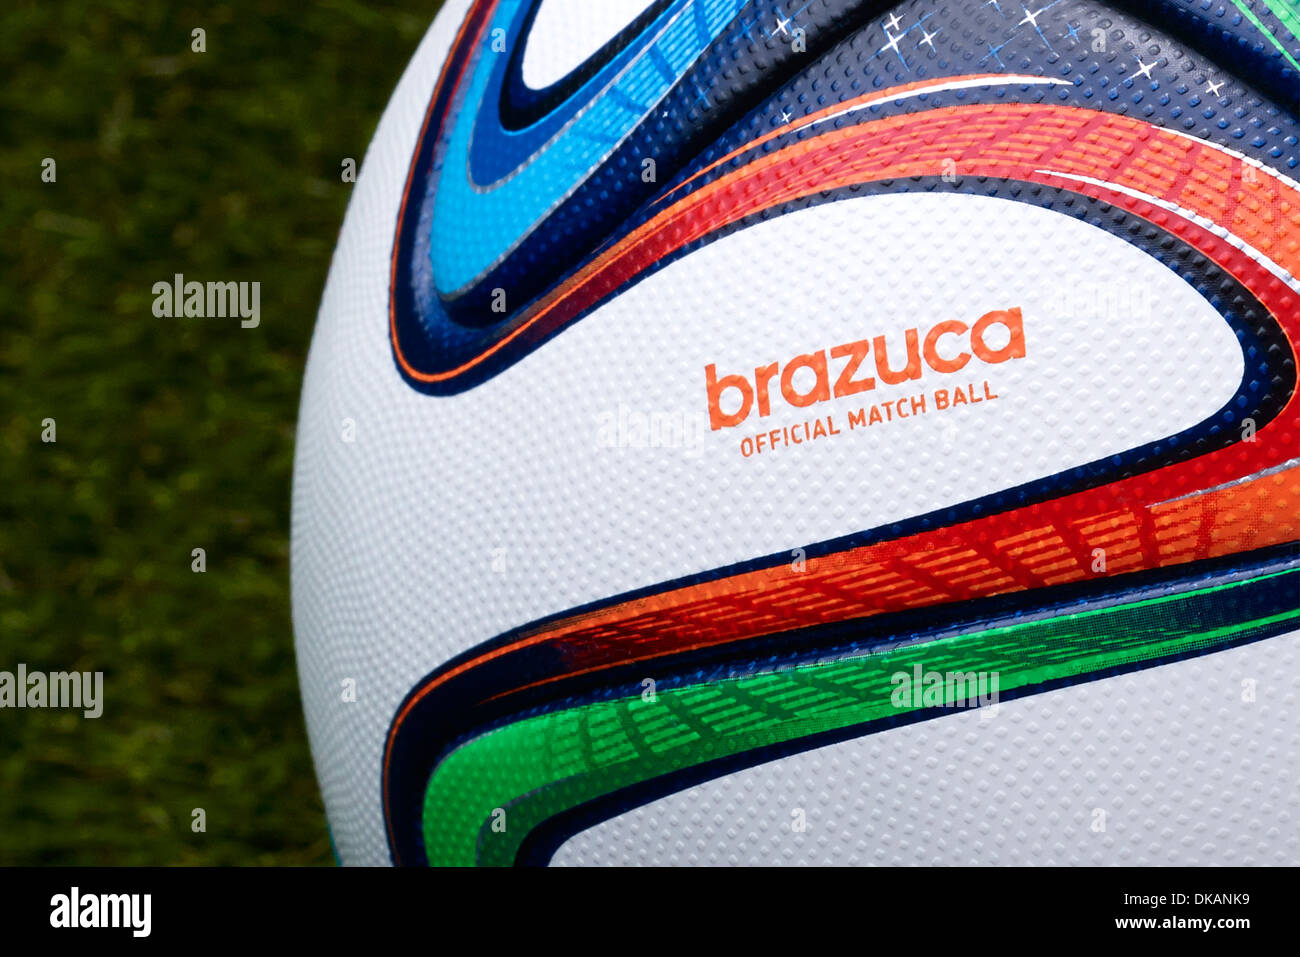 Adidas Brazuca, ufficiale match ball della FIFA World Cup Brasil 2014 Foto Stock